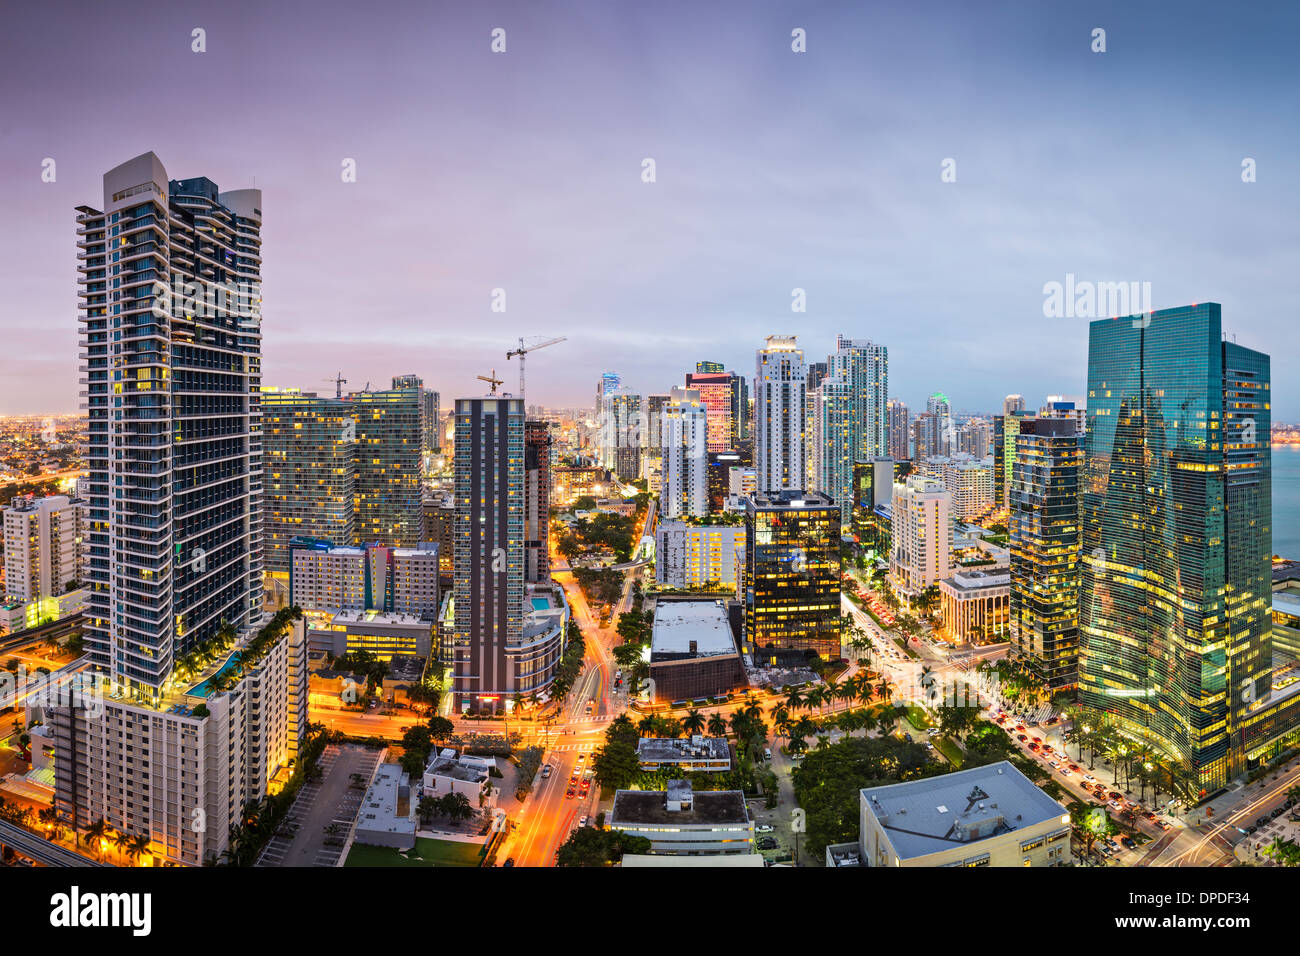 Miami, Florida, USA downtown nightt aerial cityscape at night. Stock Photo